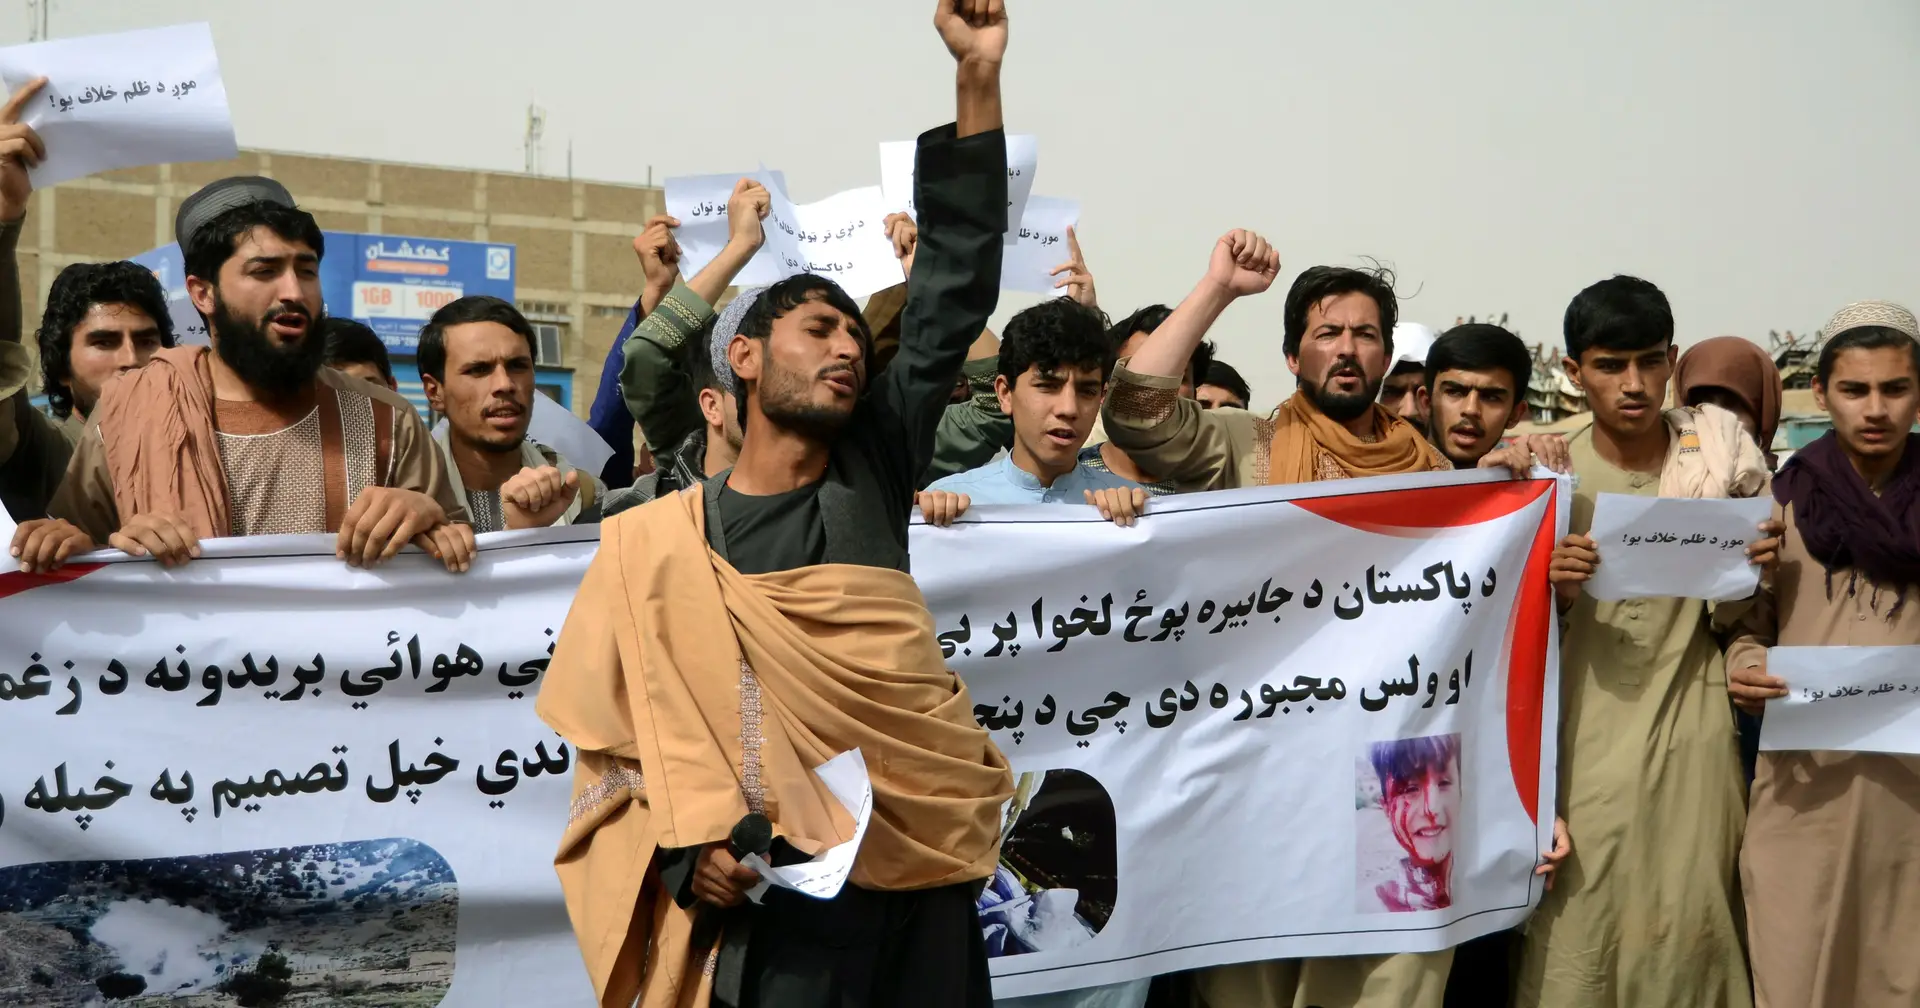 Afeganistão. Protestos após bombardeamentos paquistaneses que fizeram 48 mortos